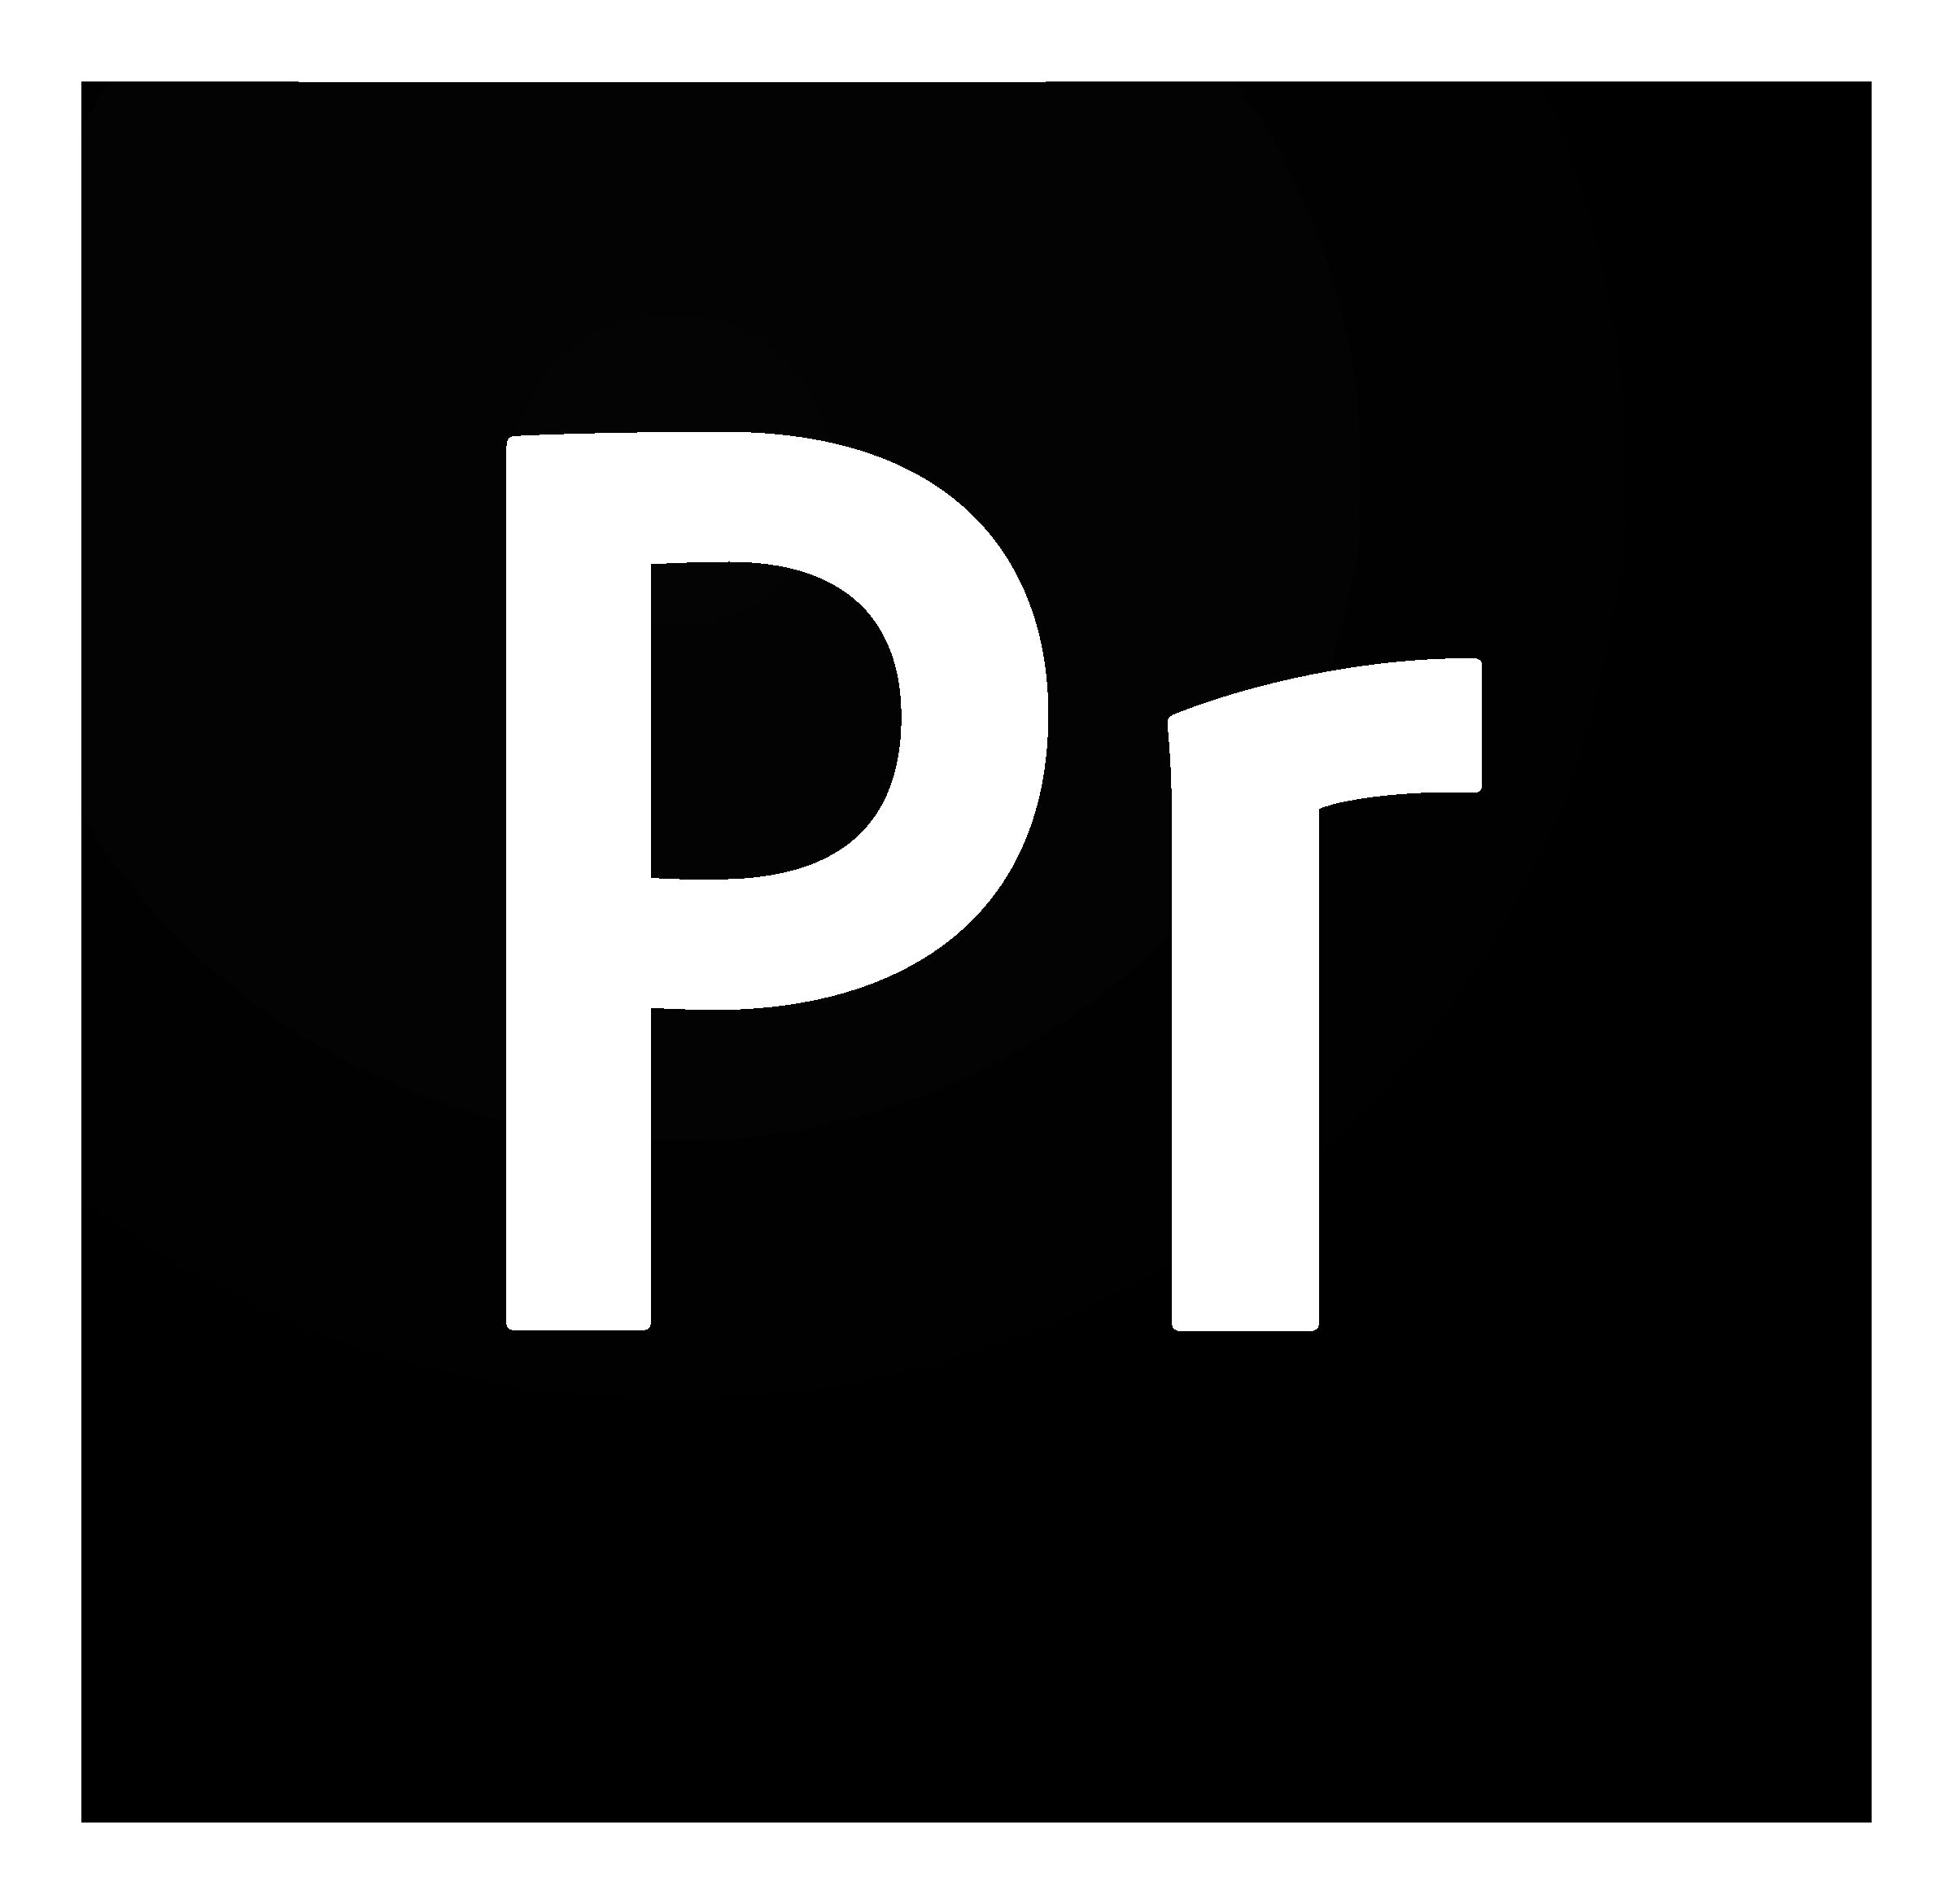 CC and White Logo - Premiere Pro CC Logo PNG Transparent & SVG Vector